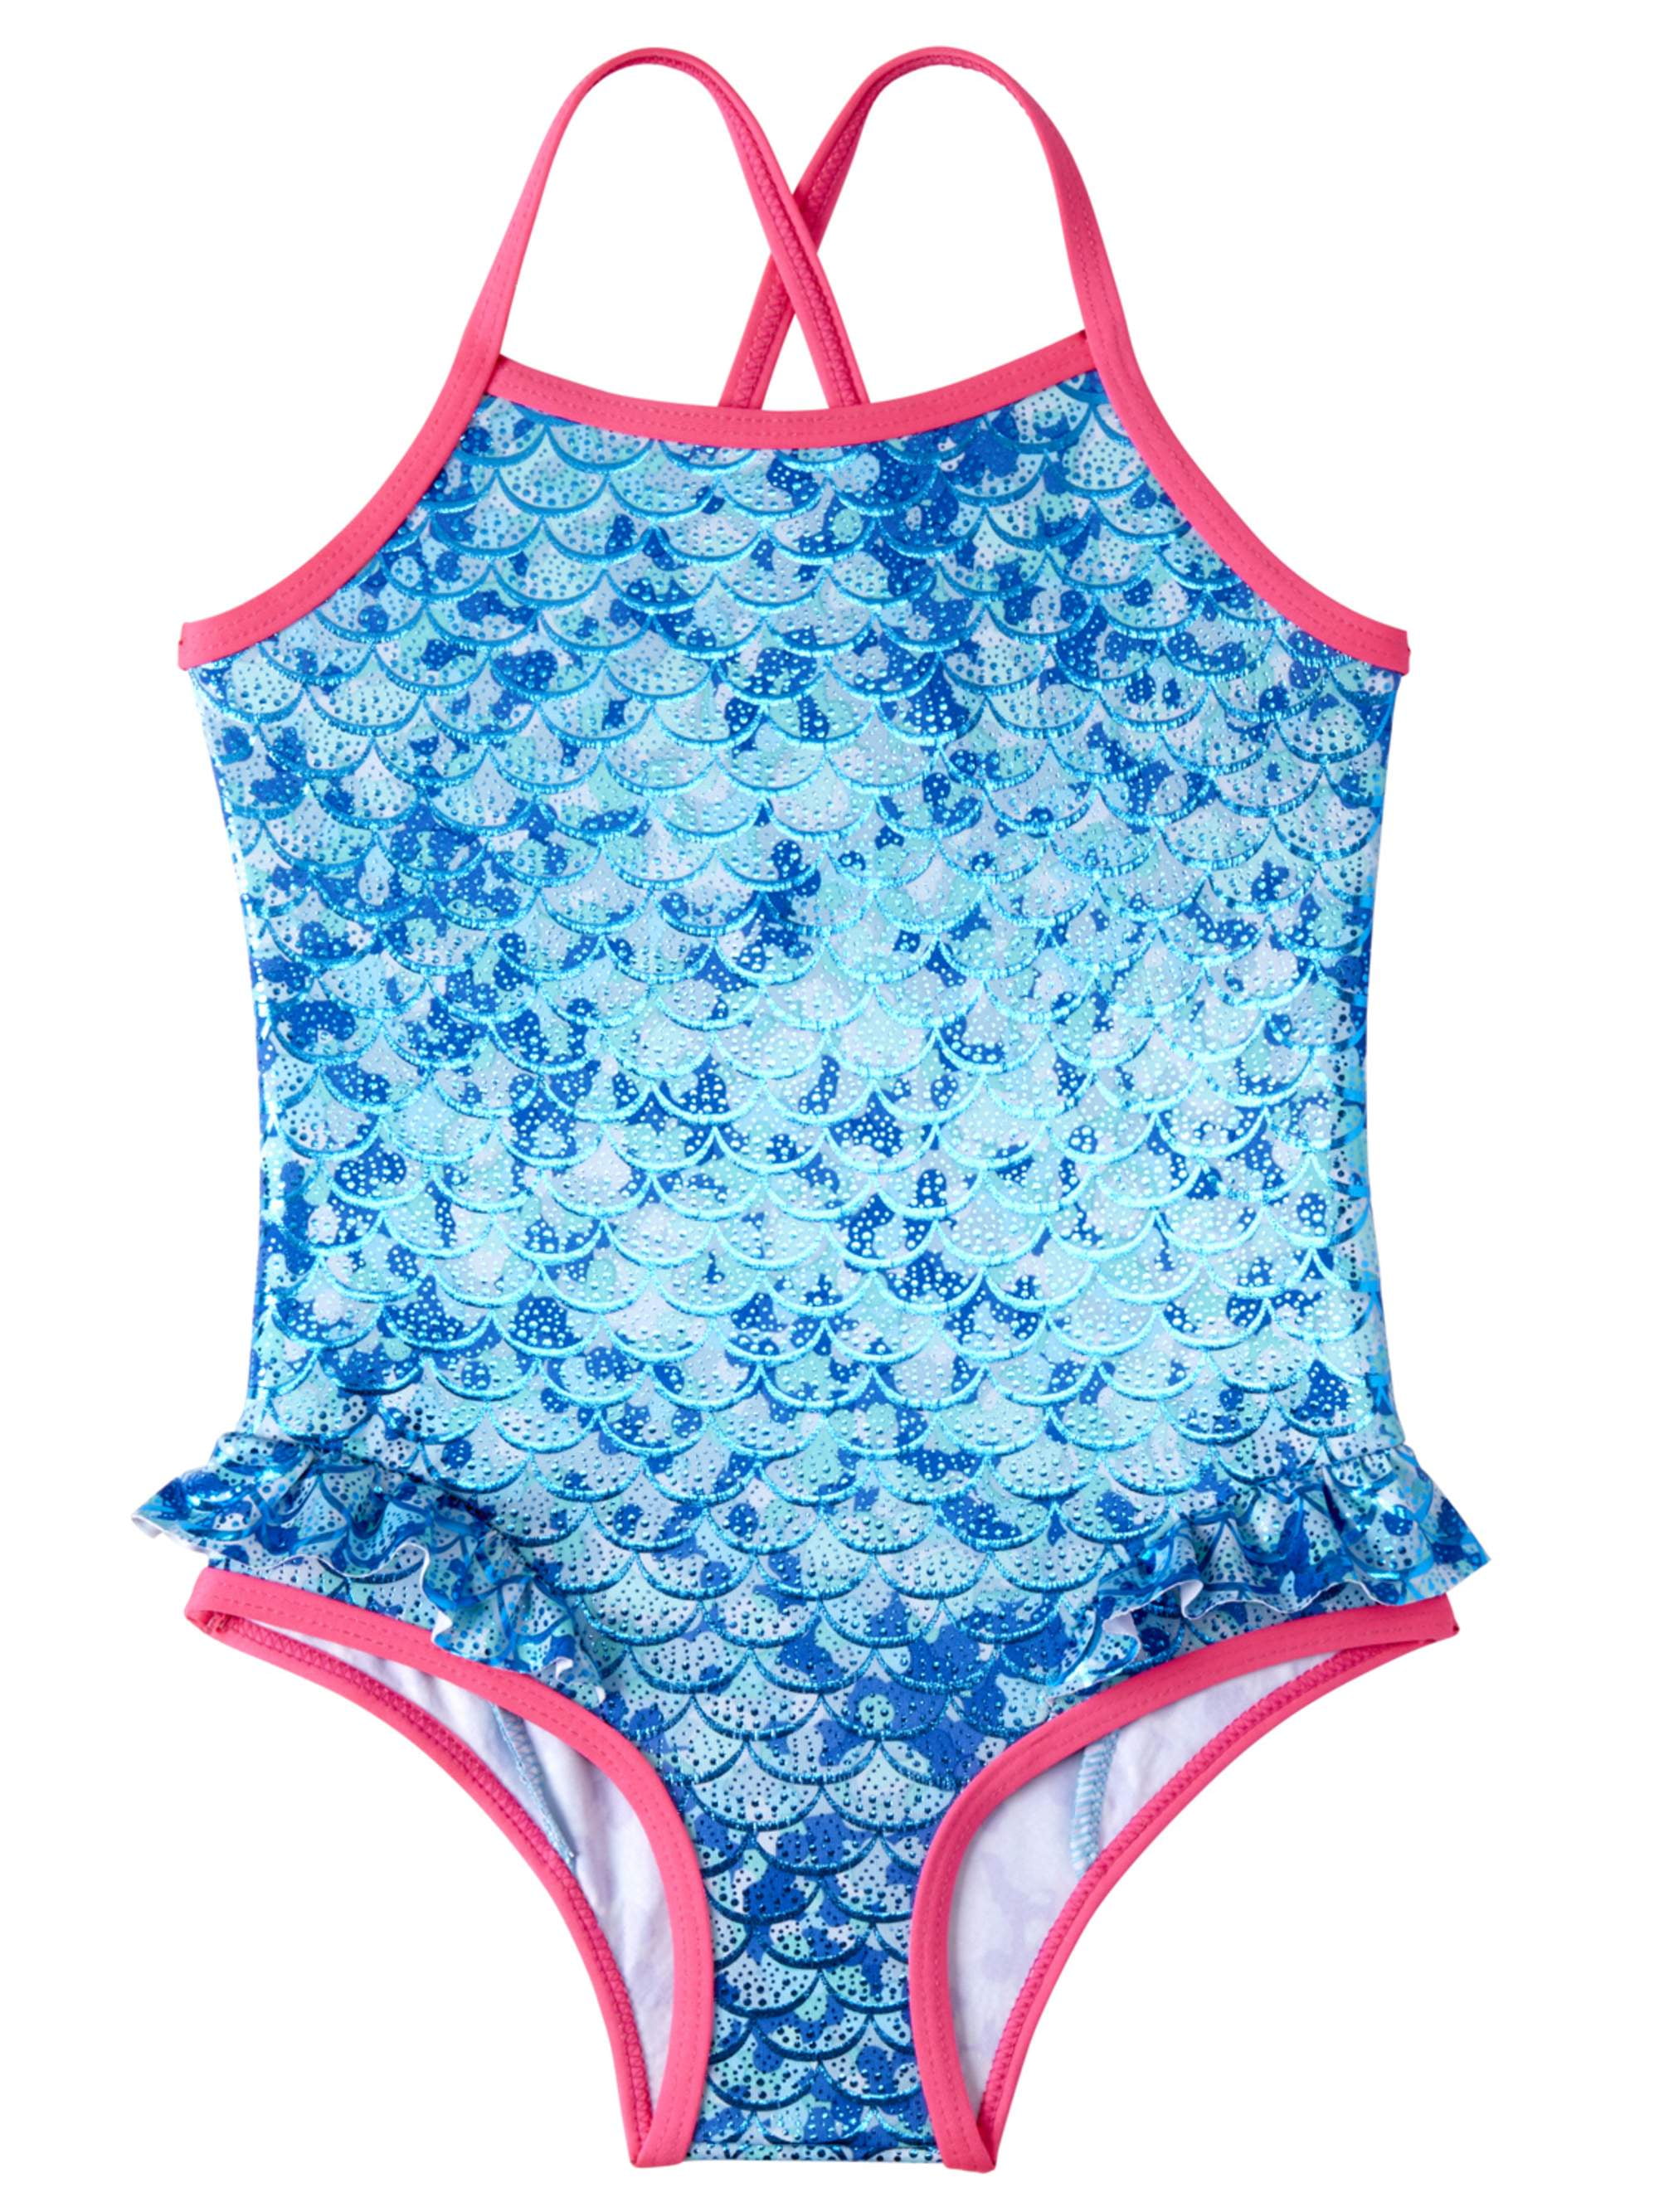 Swimwear for Baby Girls